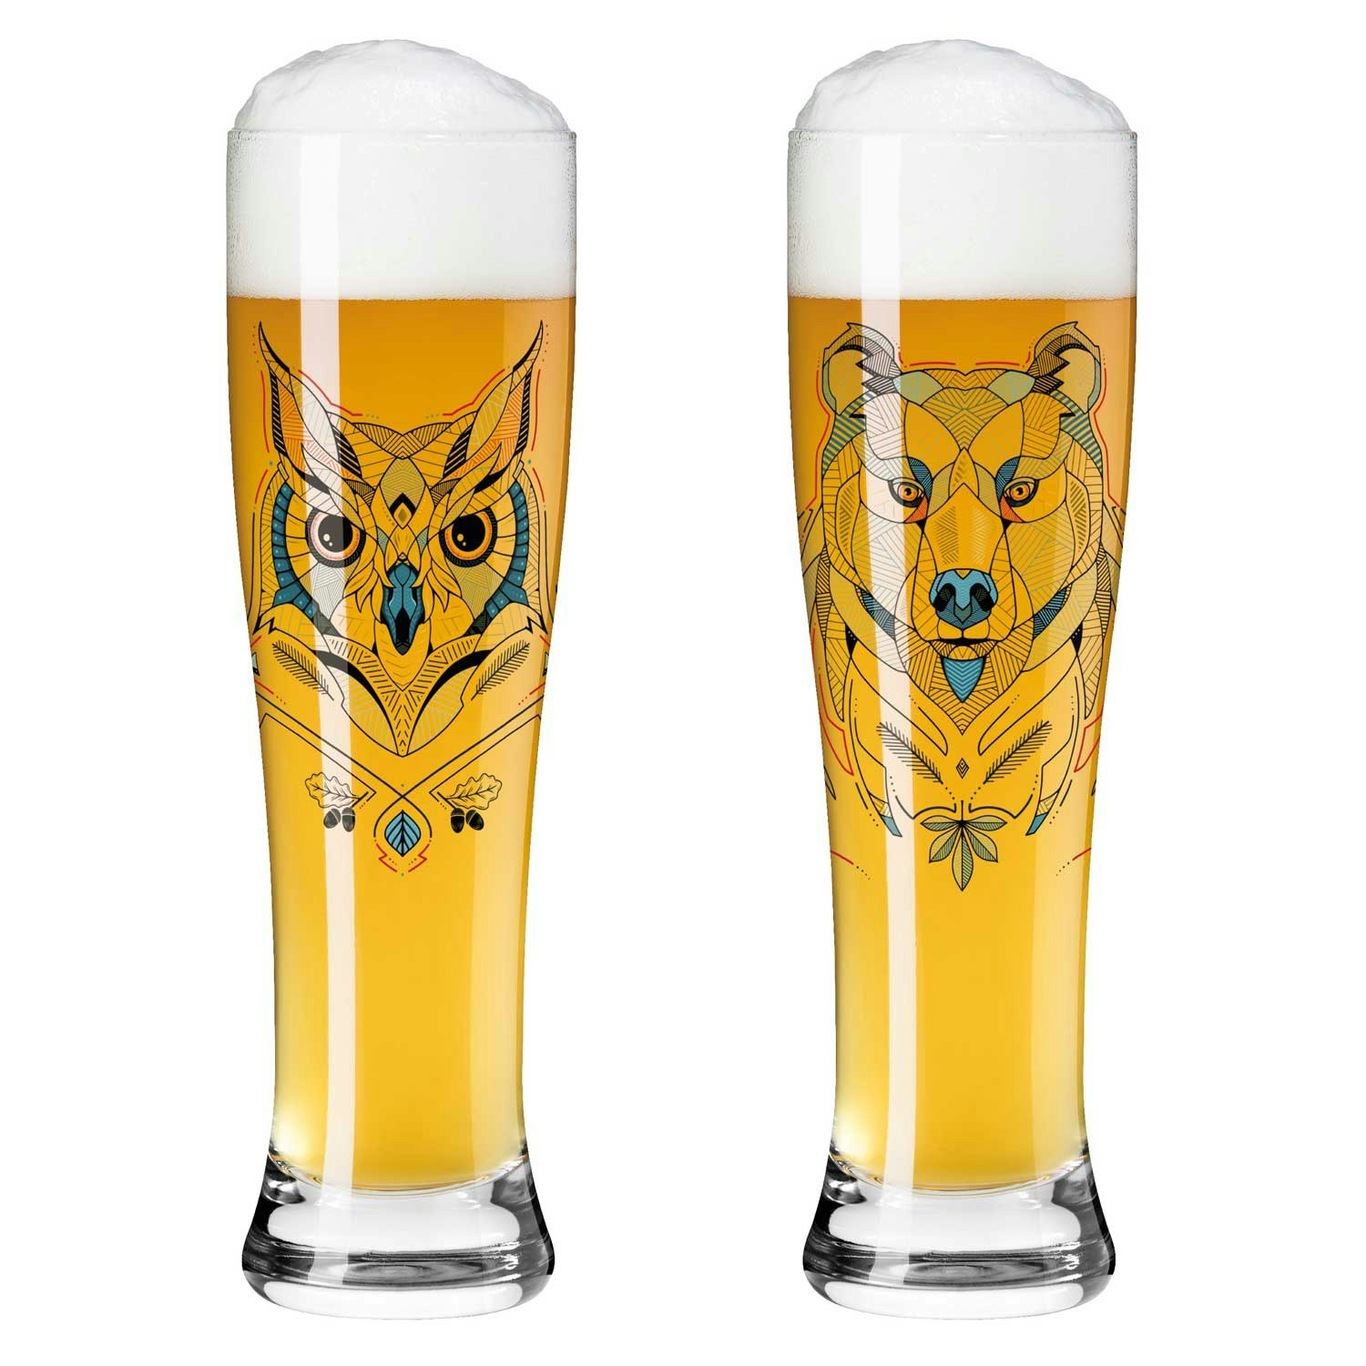 Brauchzeit Beer Glass 2-pack, #1 & 2